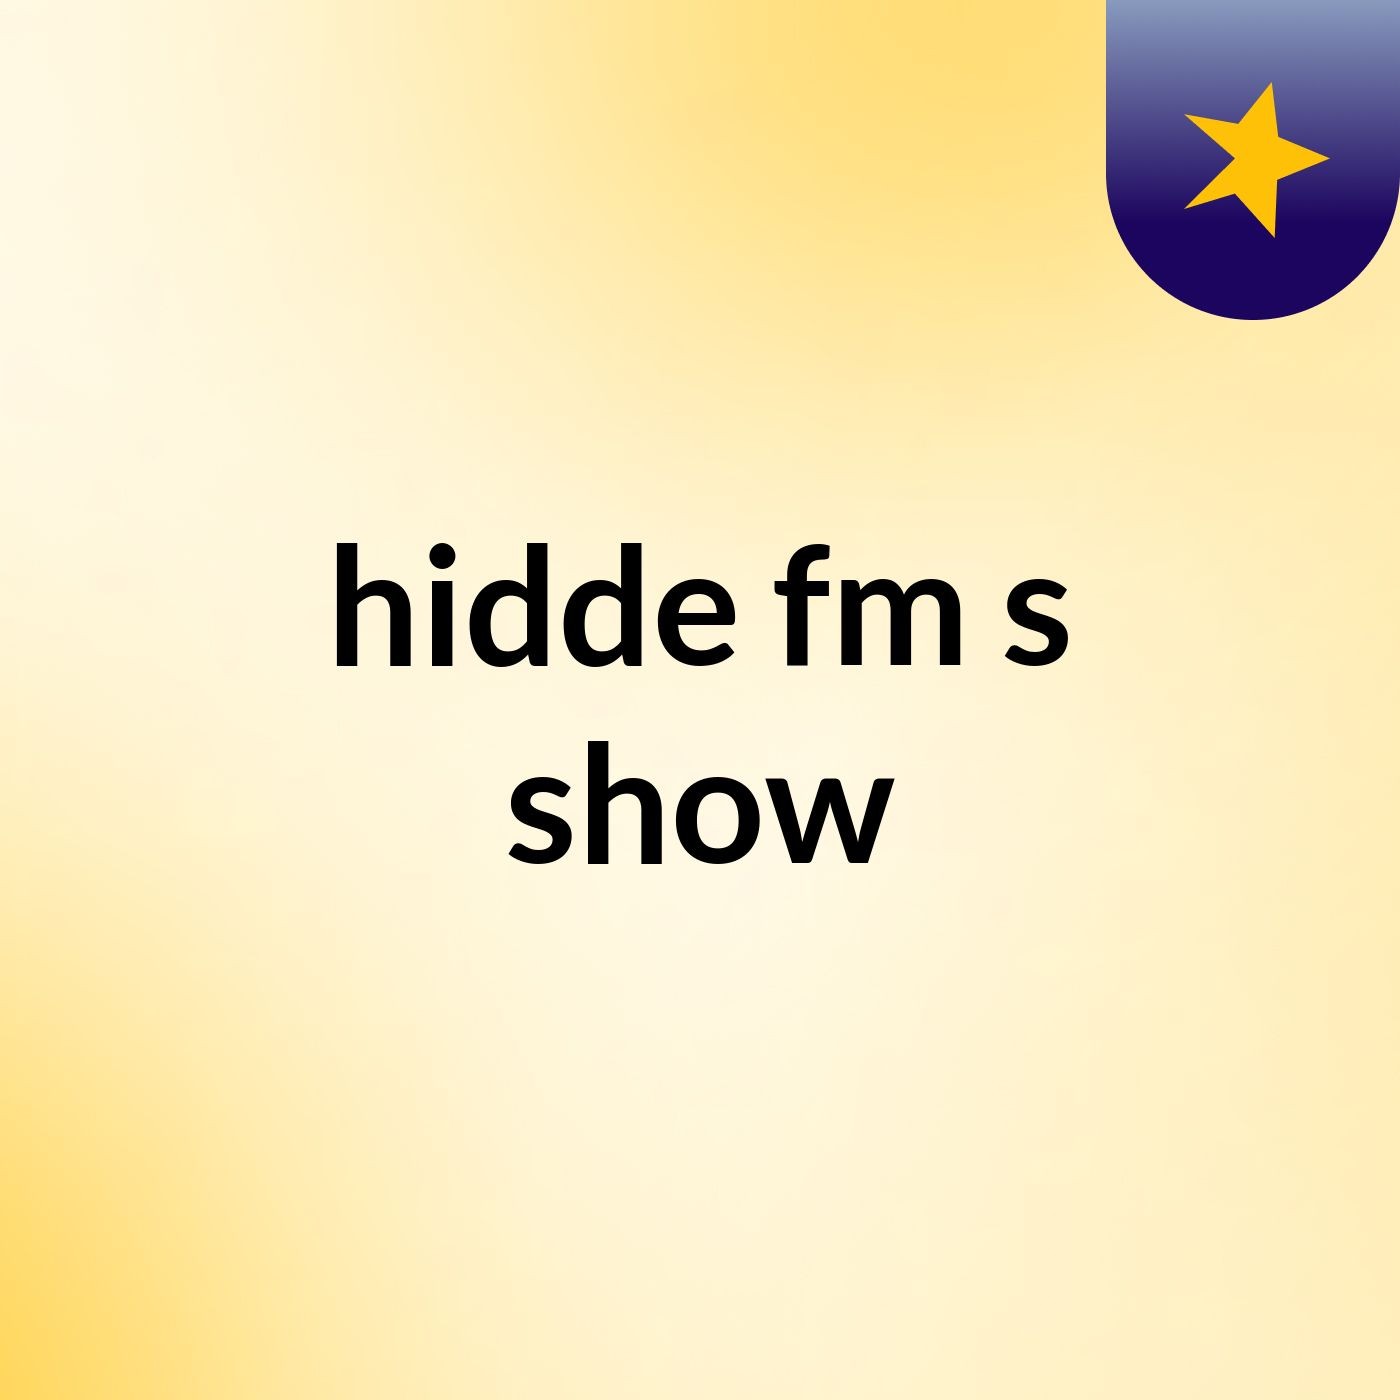 hidde fm's show